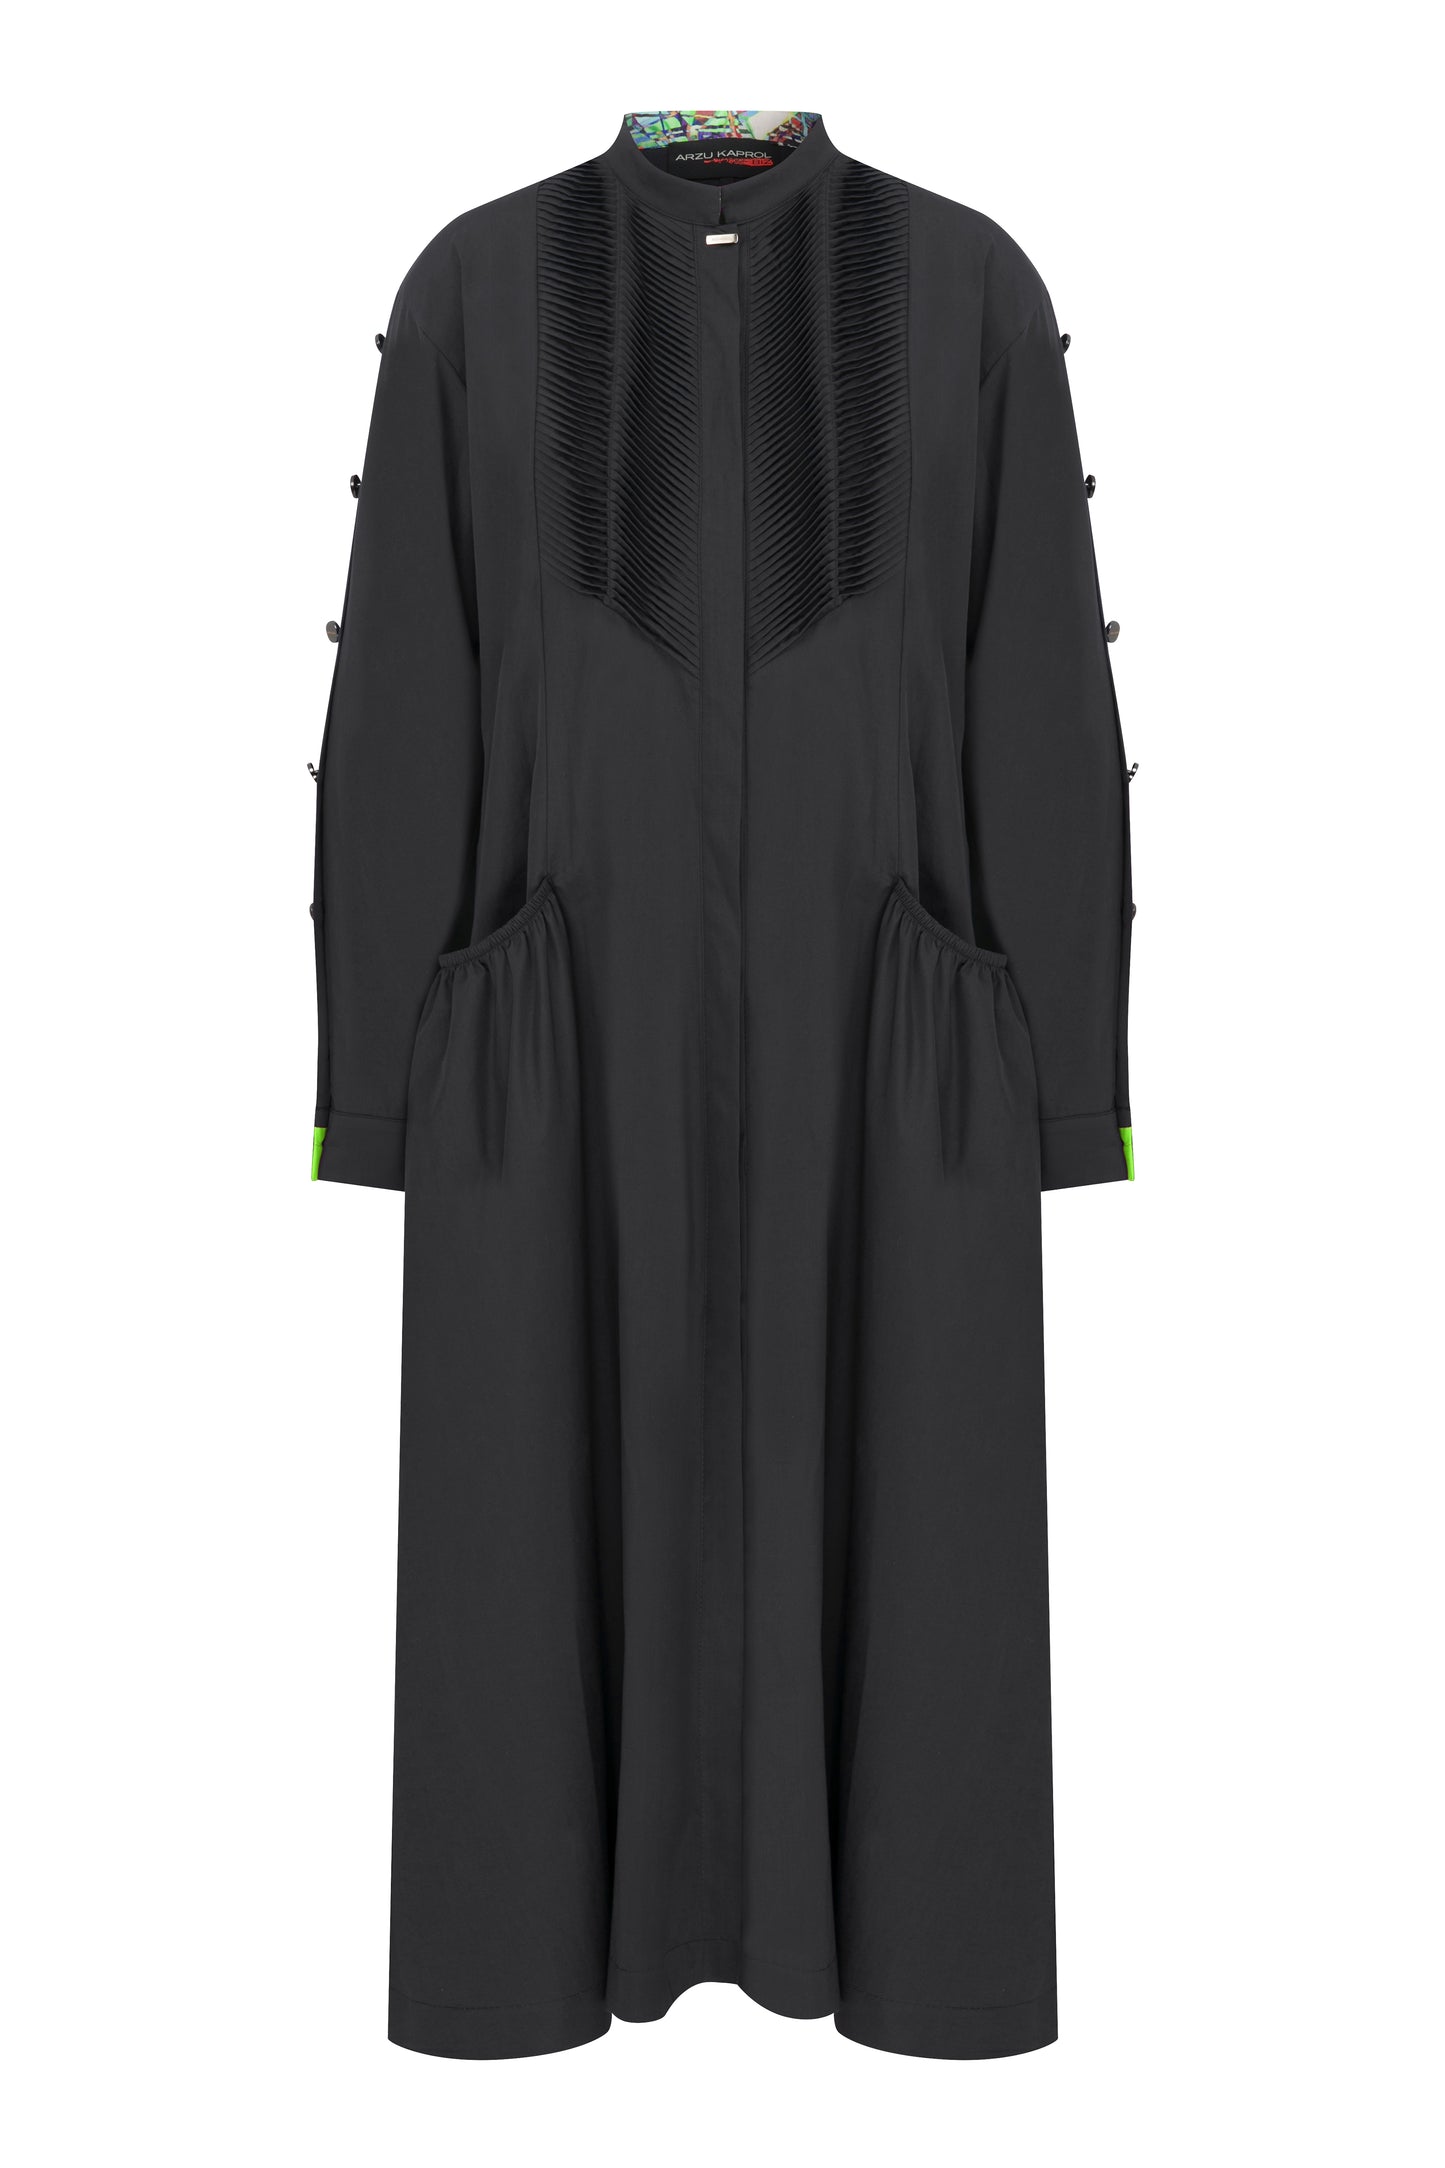 Hakim Yaka Siyah Uzun Gömlek Elbise